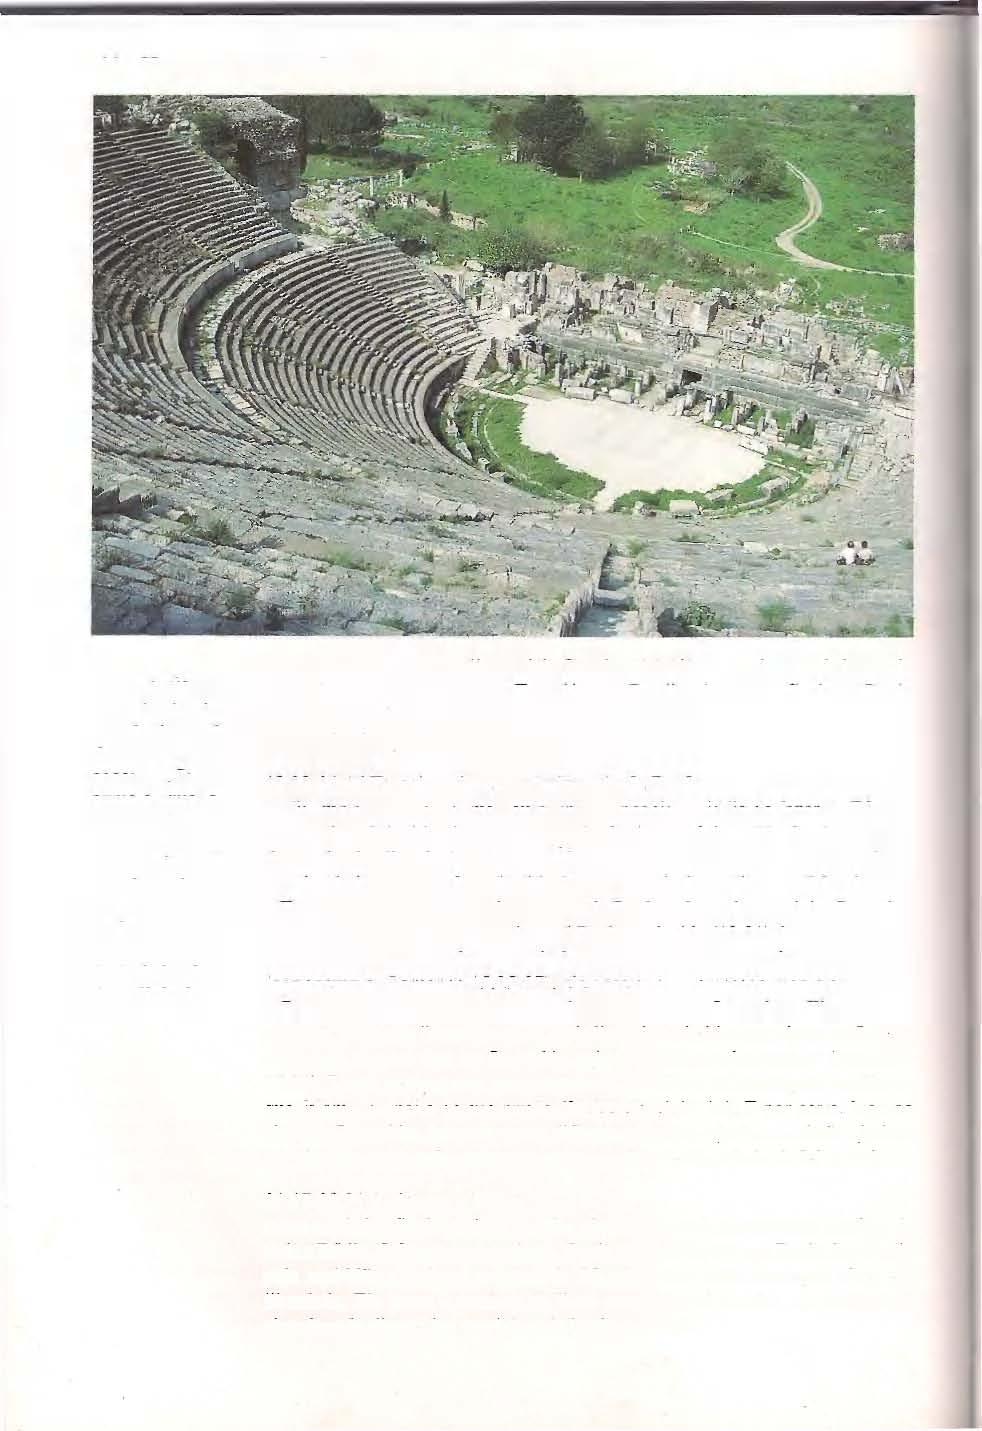 66 HOMENS COM UMA MENSAGEM 0 gigantesco teatro de Éfeso visto do alto do terceiro lance de degraus ou assentos.